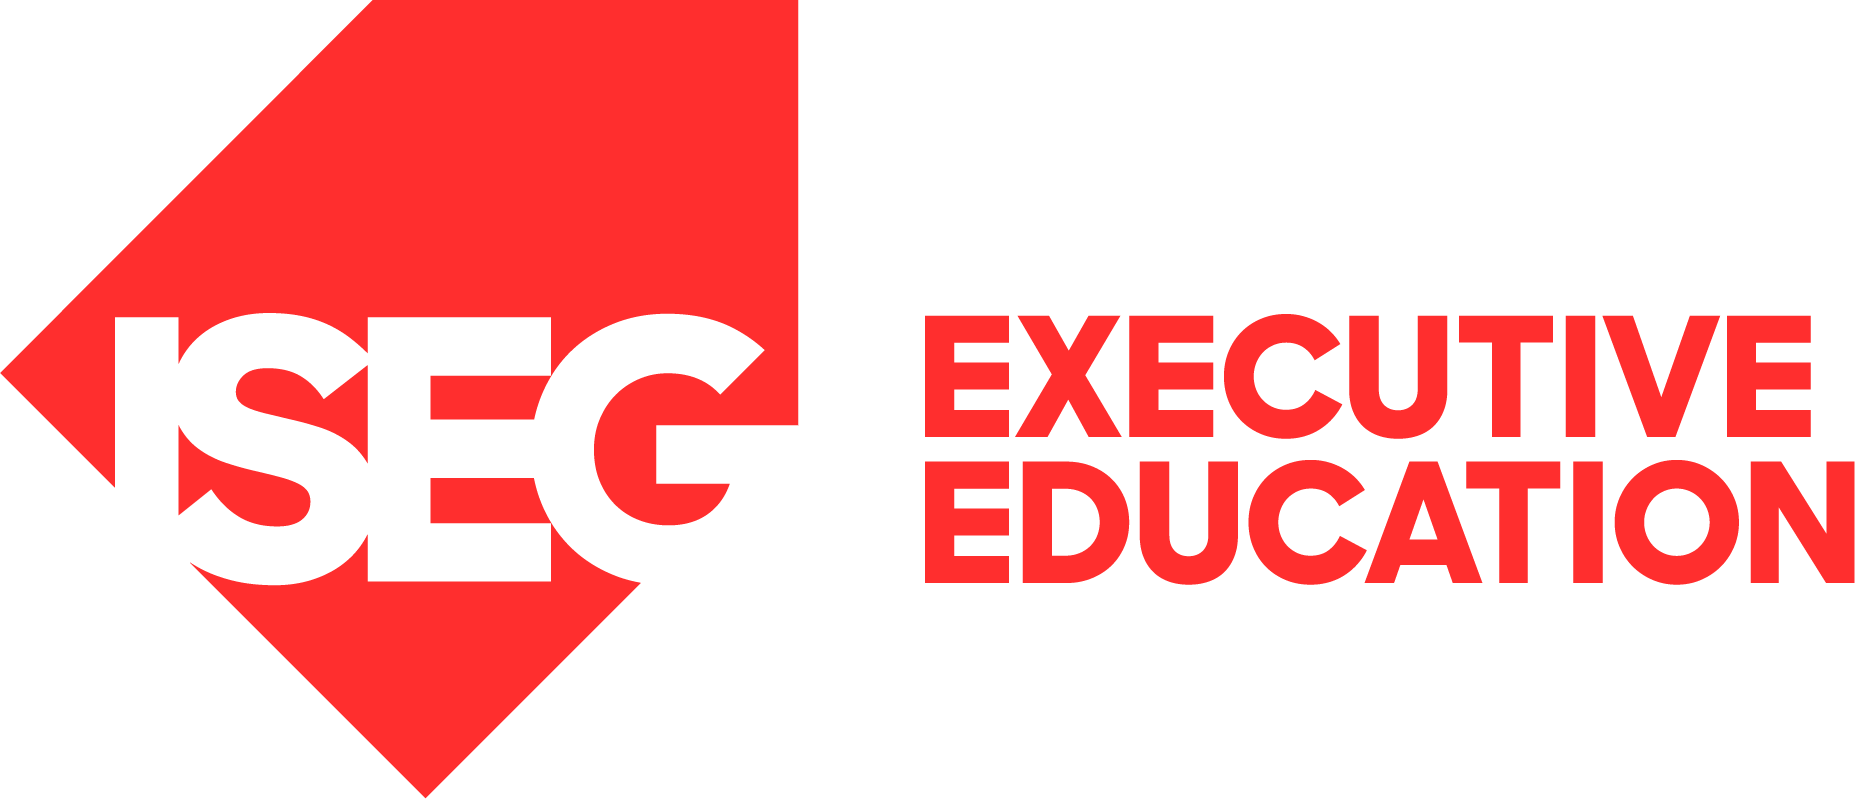 logo-iseg-executive-education